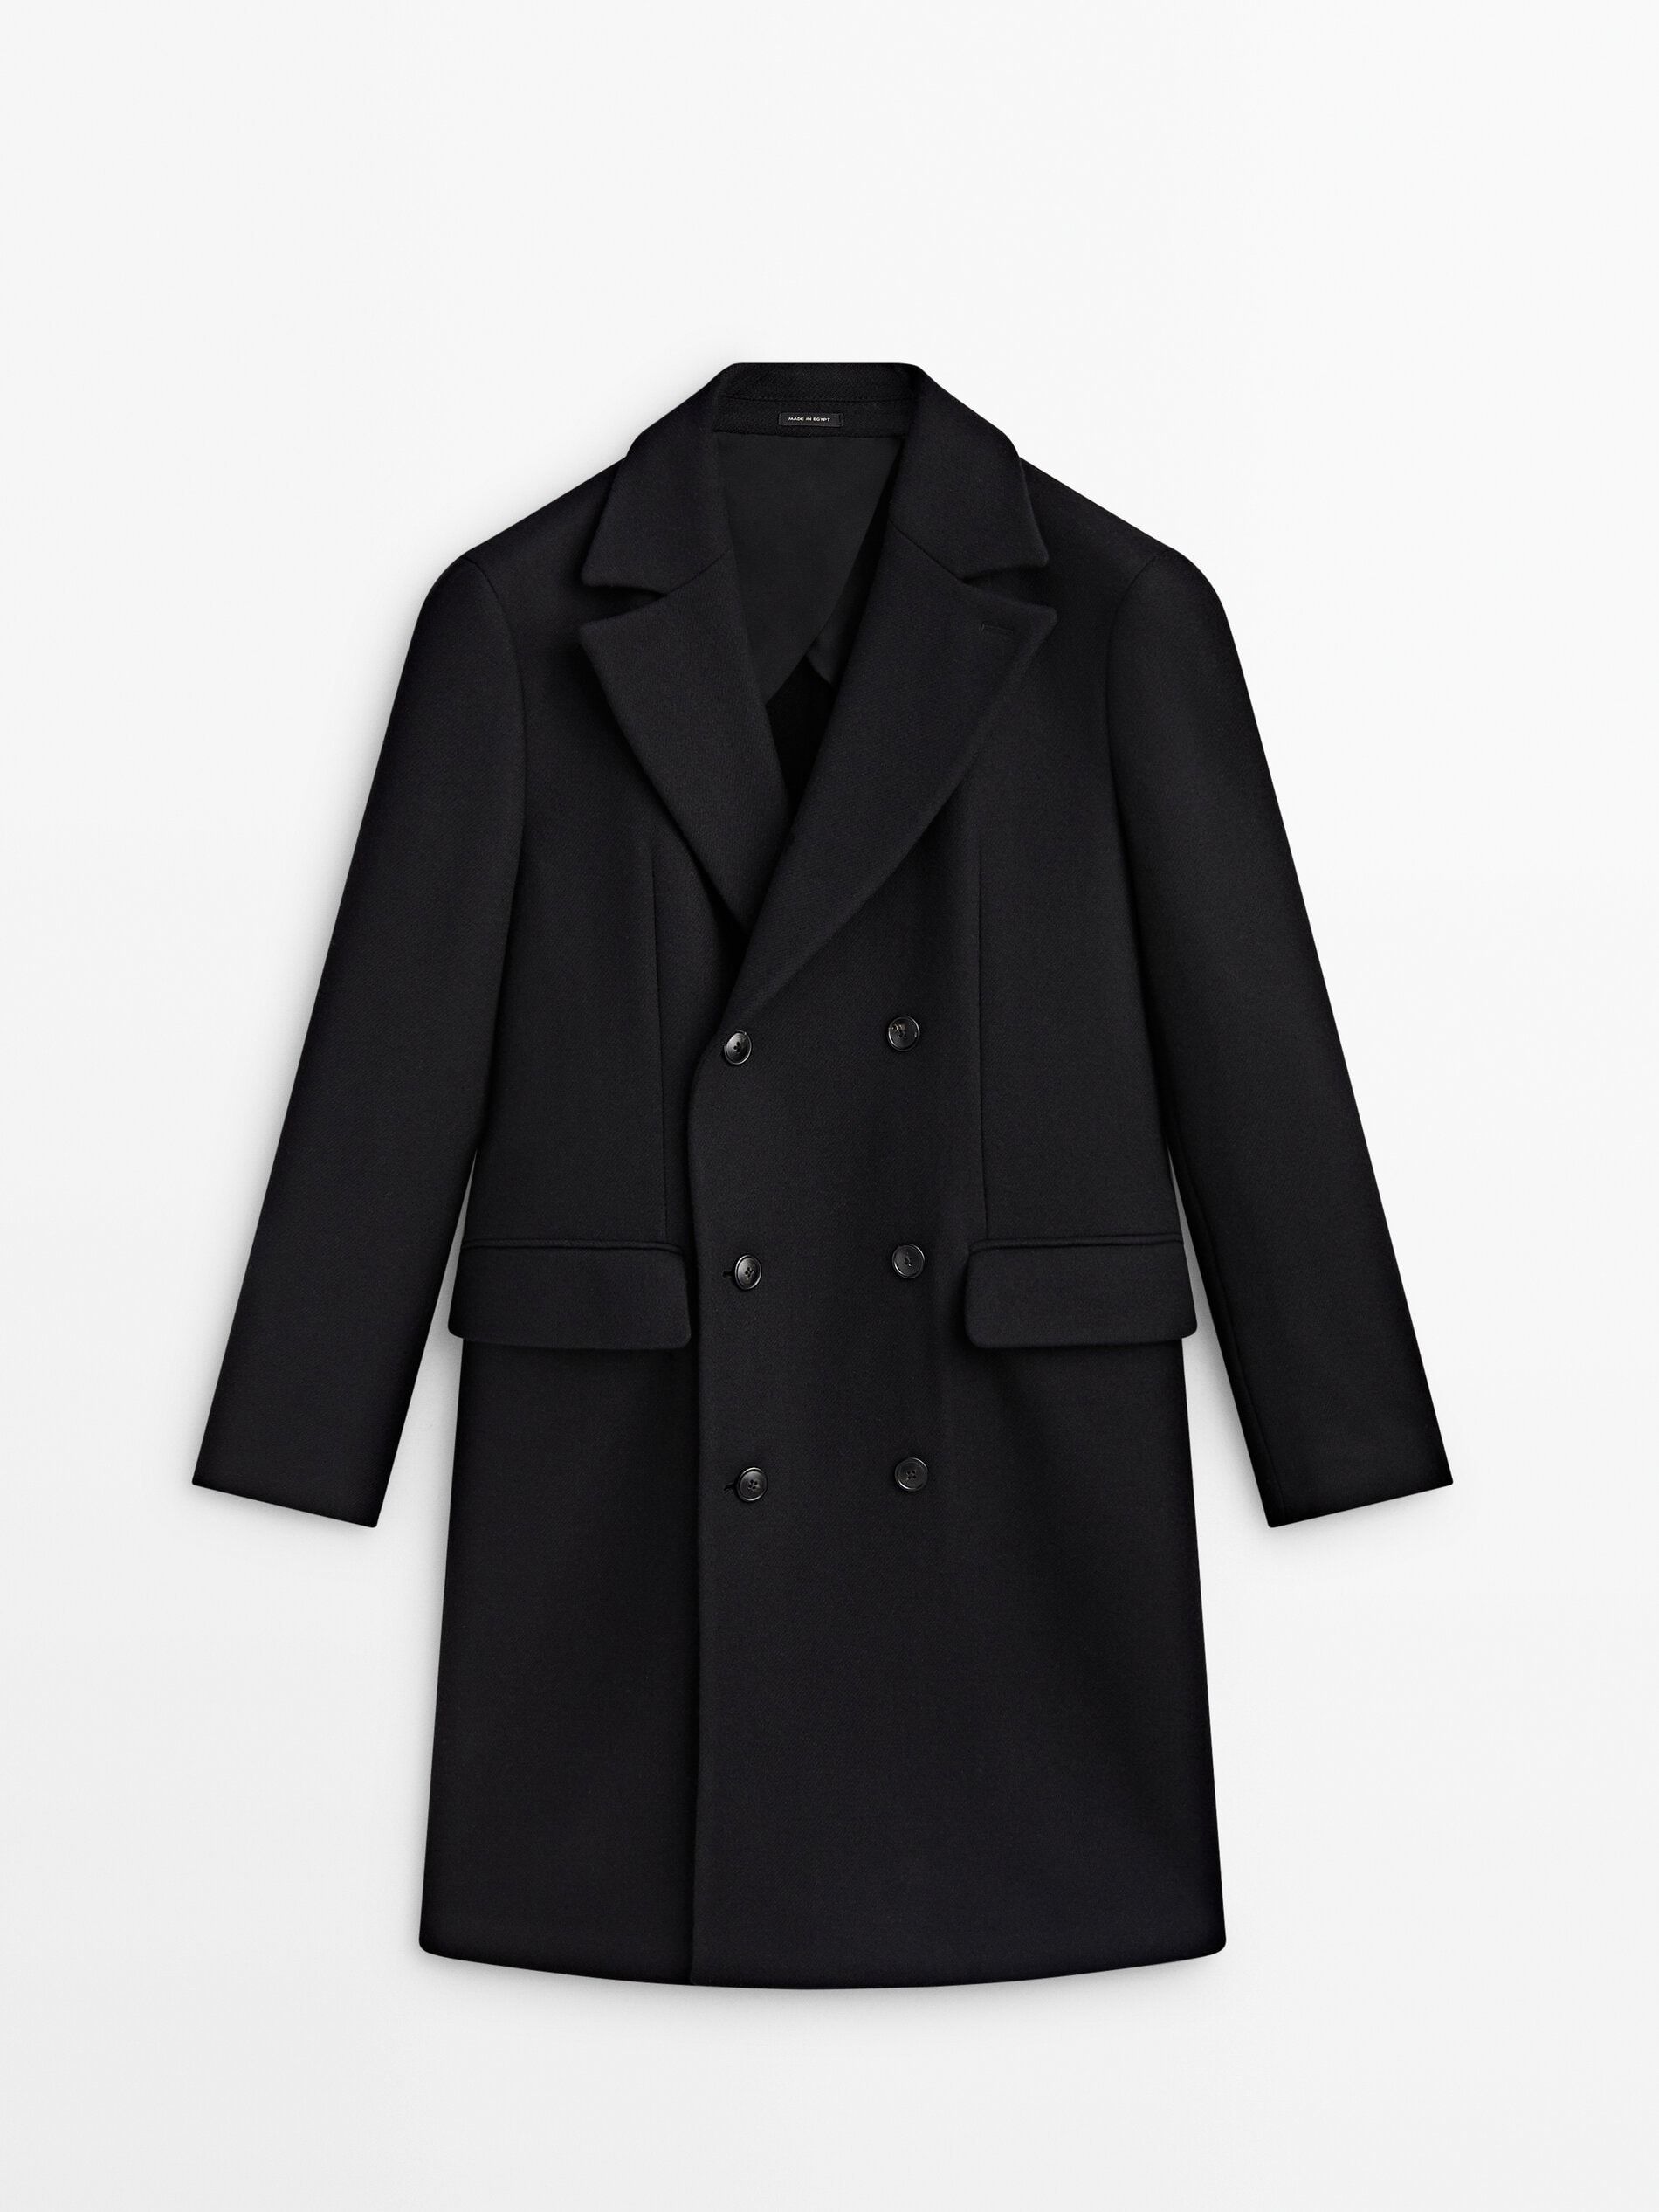 Schwarzer Mantel aus Wollmischung in Wickeloptik | Massimo Dutti DE